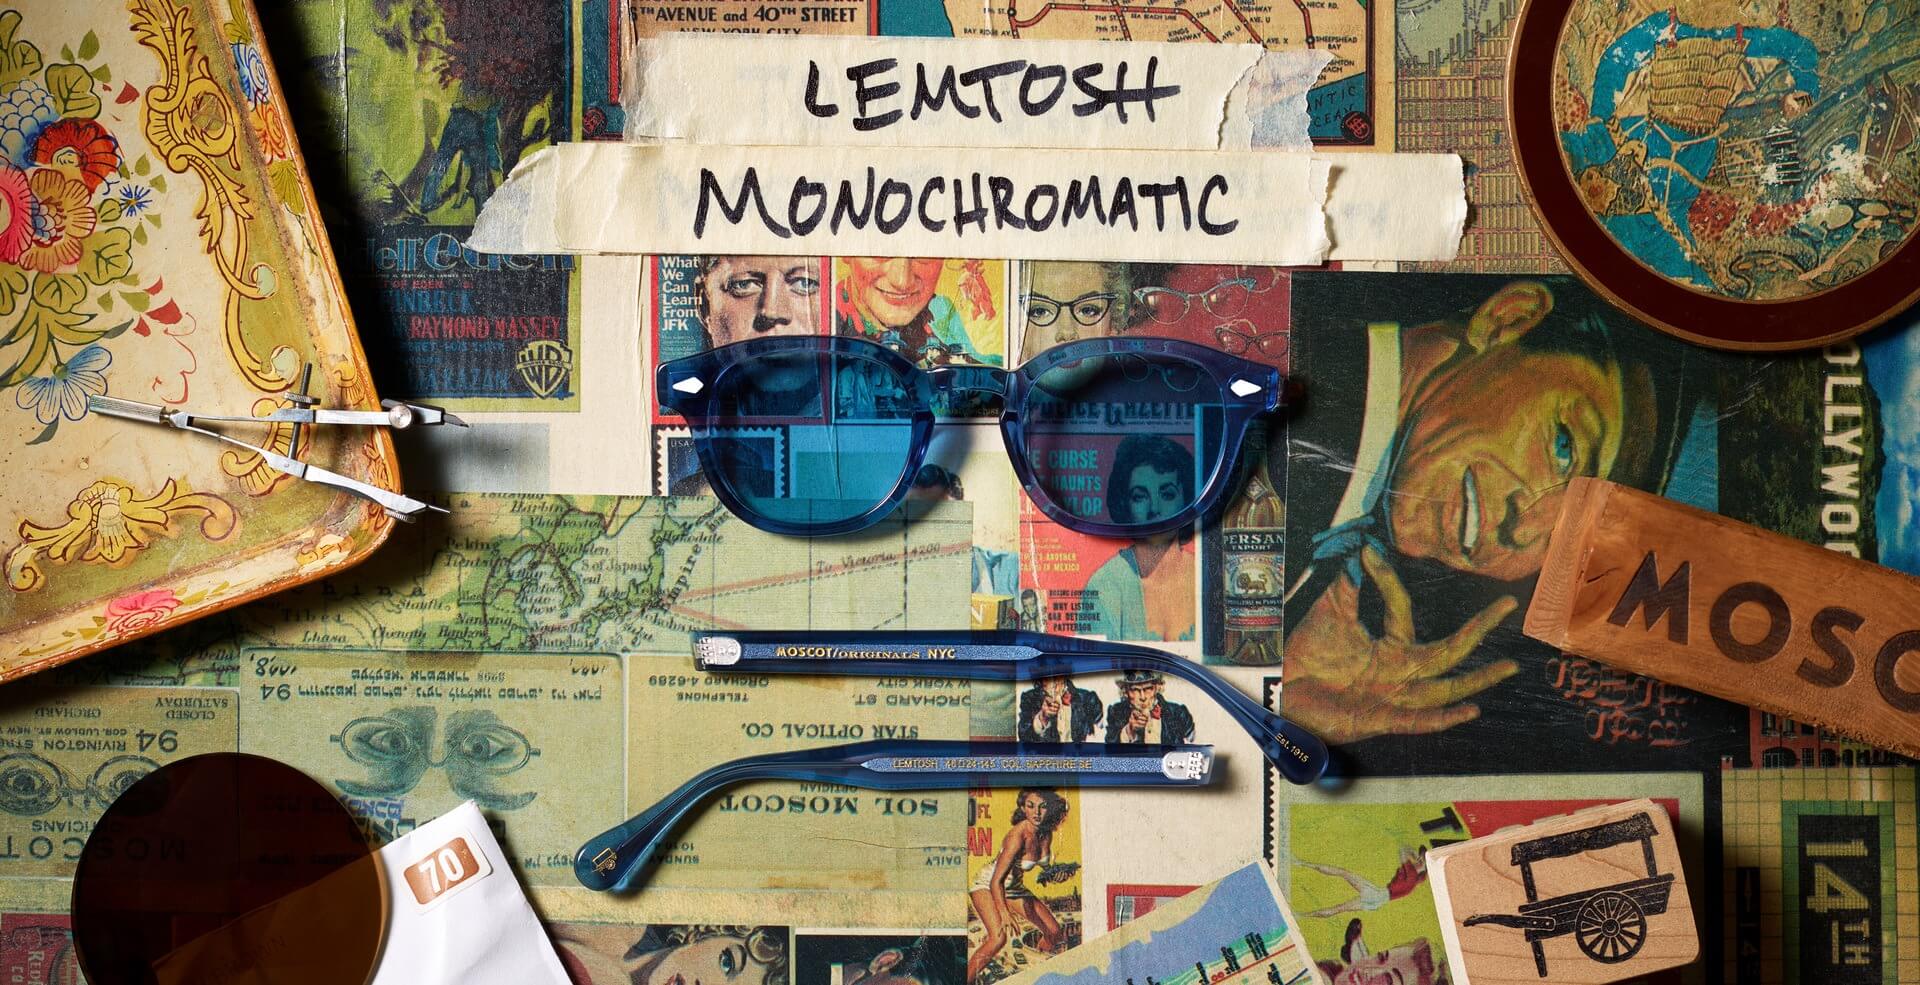 The LEMTOSH MONOCHROME